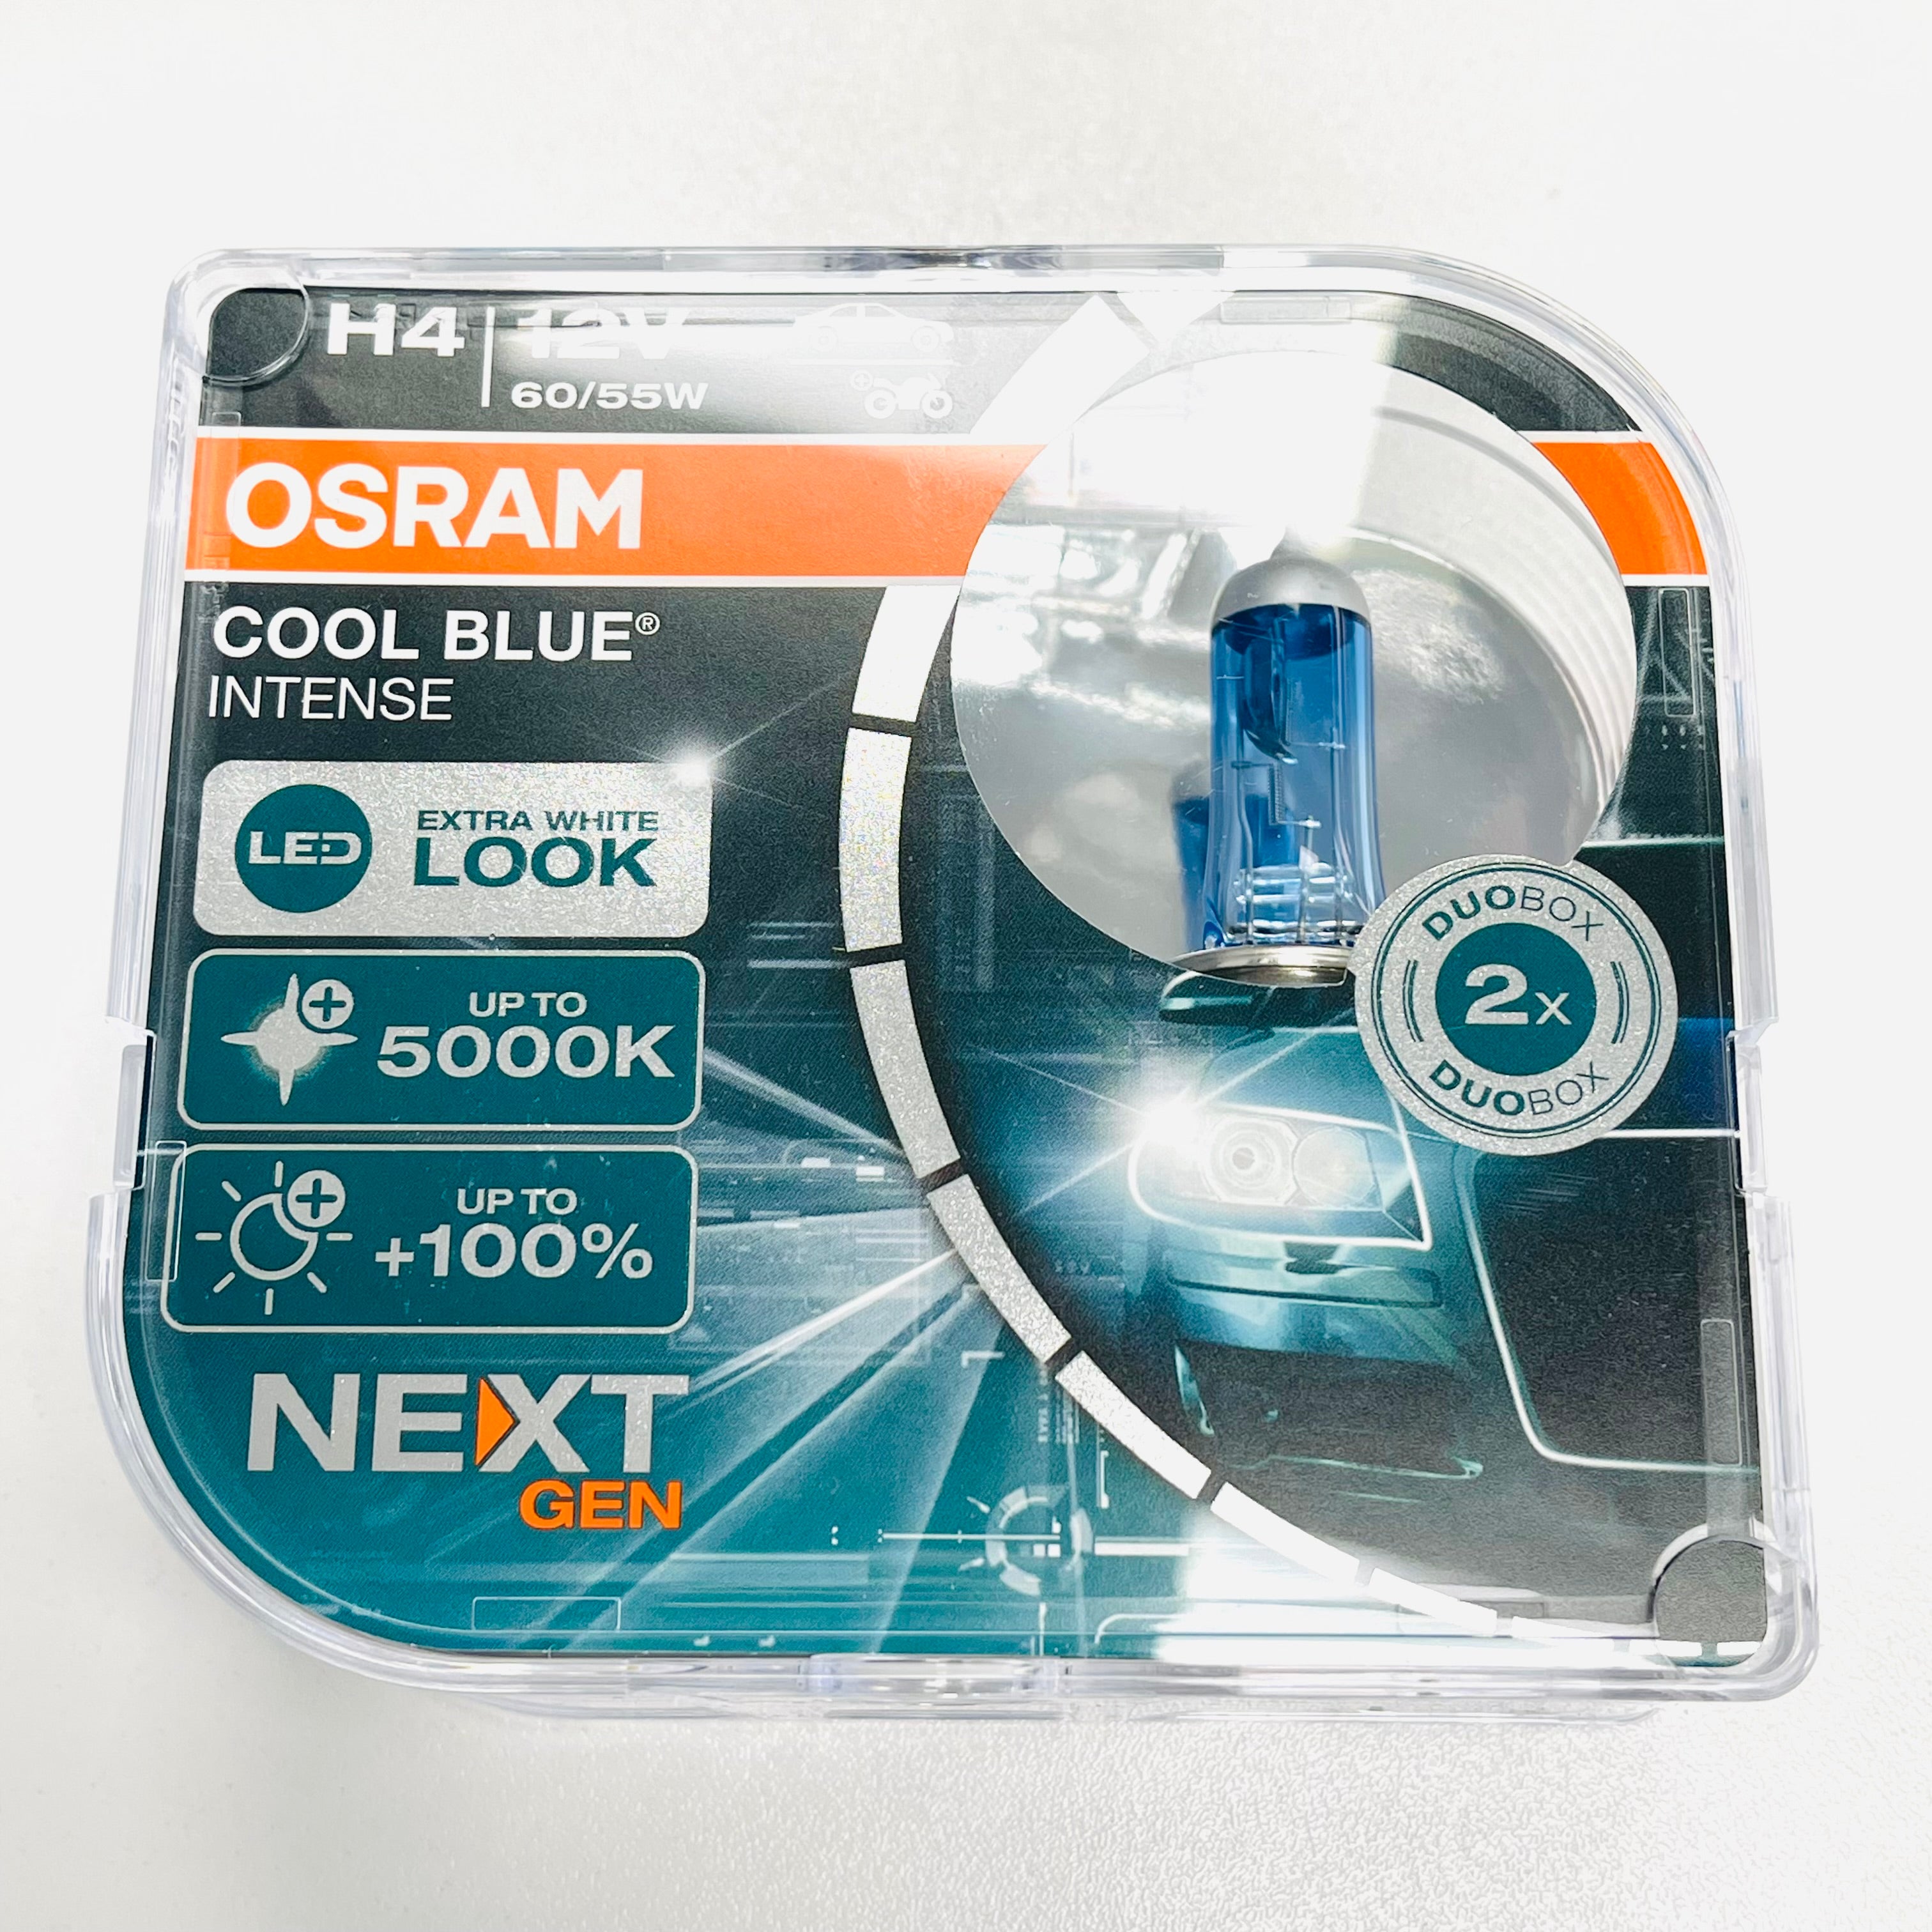 Osram halogen headlight lamps COOL BLUE INTENSE (NEXT GEN) H7